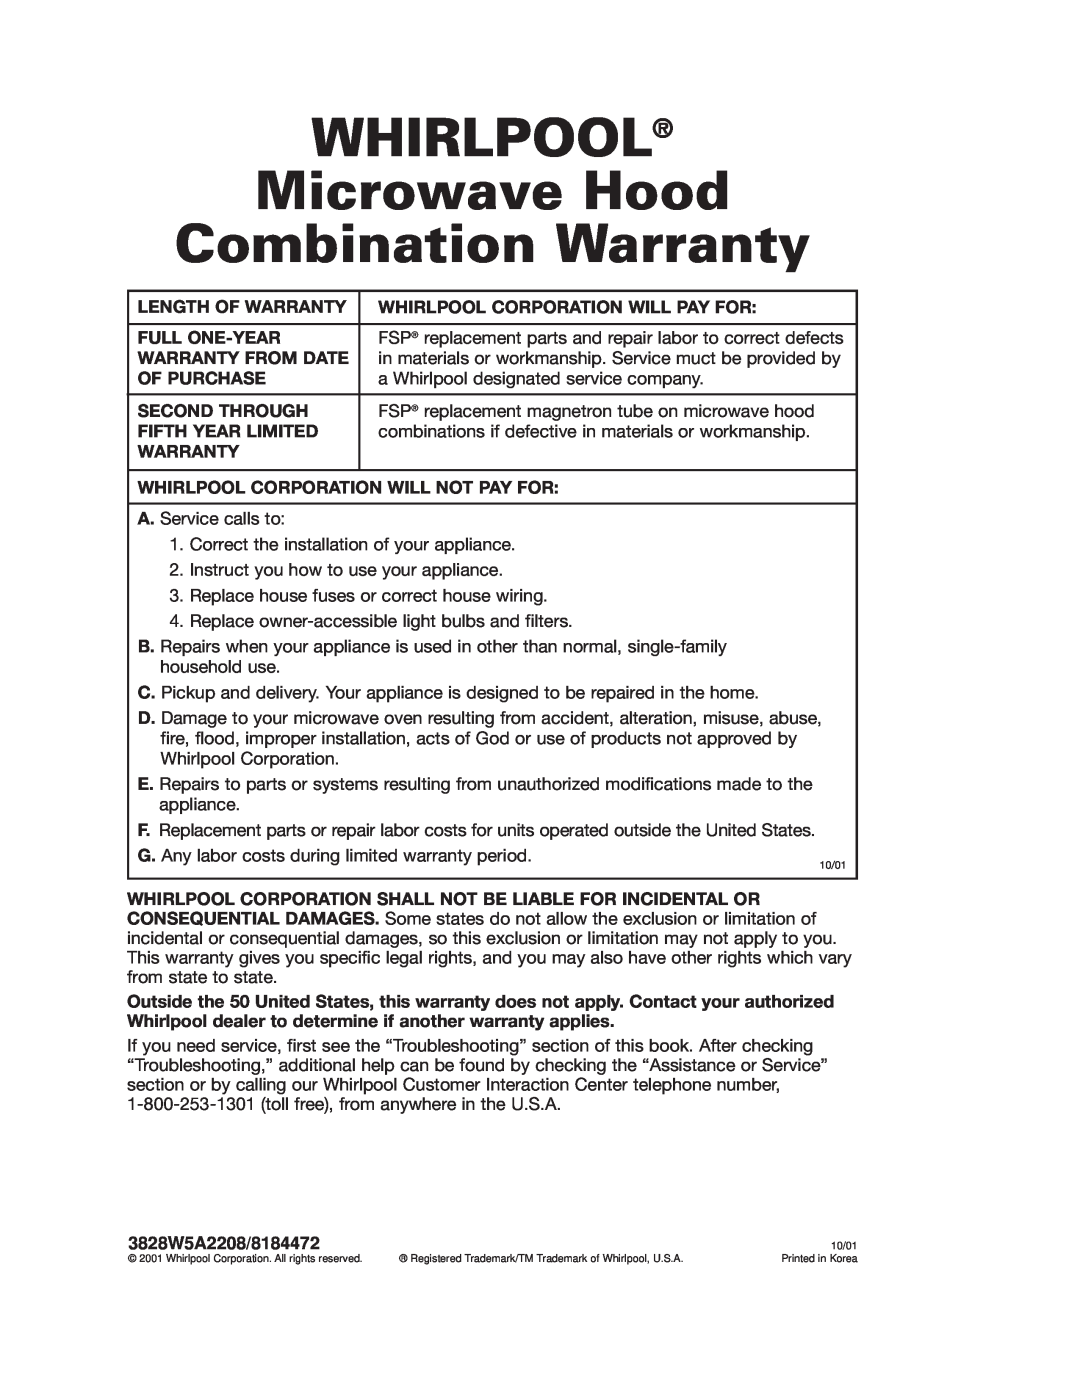 Whirlpool GH7155XKQ warranty WHIRLPOOL Microwave Hood Combination Warranty, 3828W5A2208/8184472 